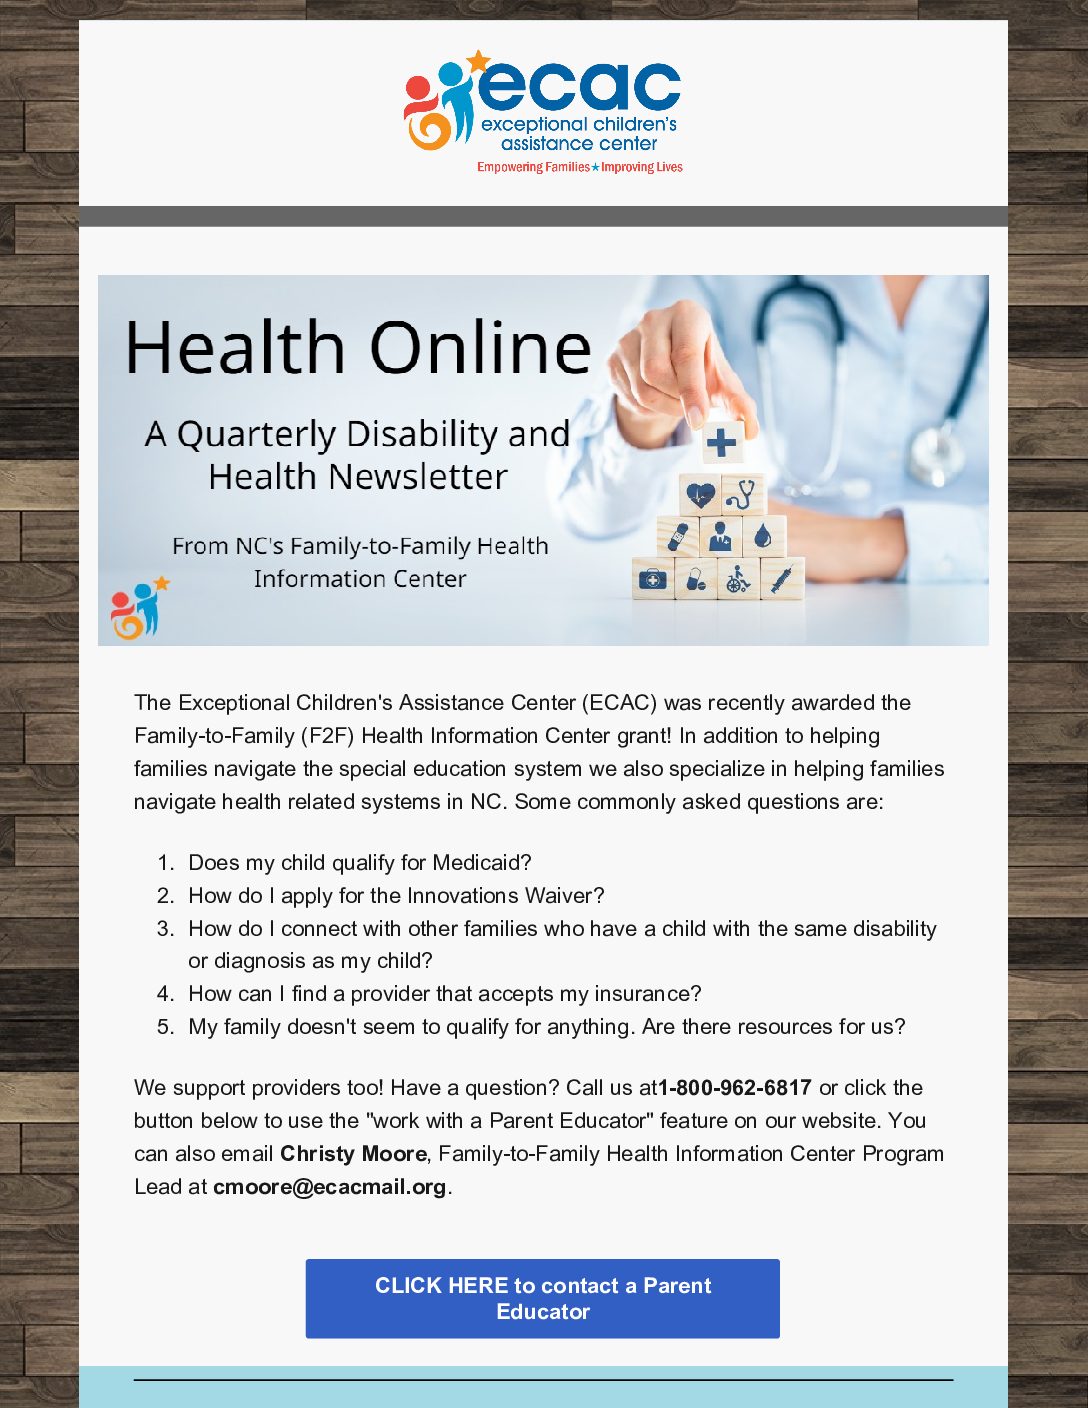 Consulte "Salud en línea", un nuevo boletín trimestral sobre discapacidad y salud